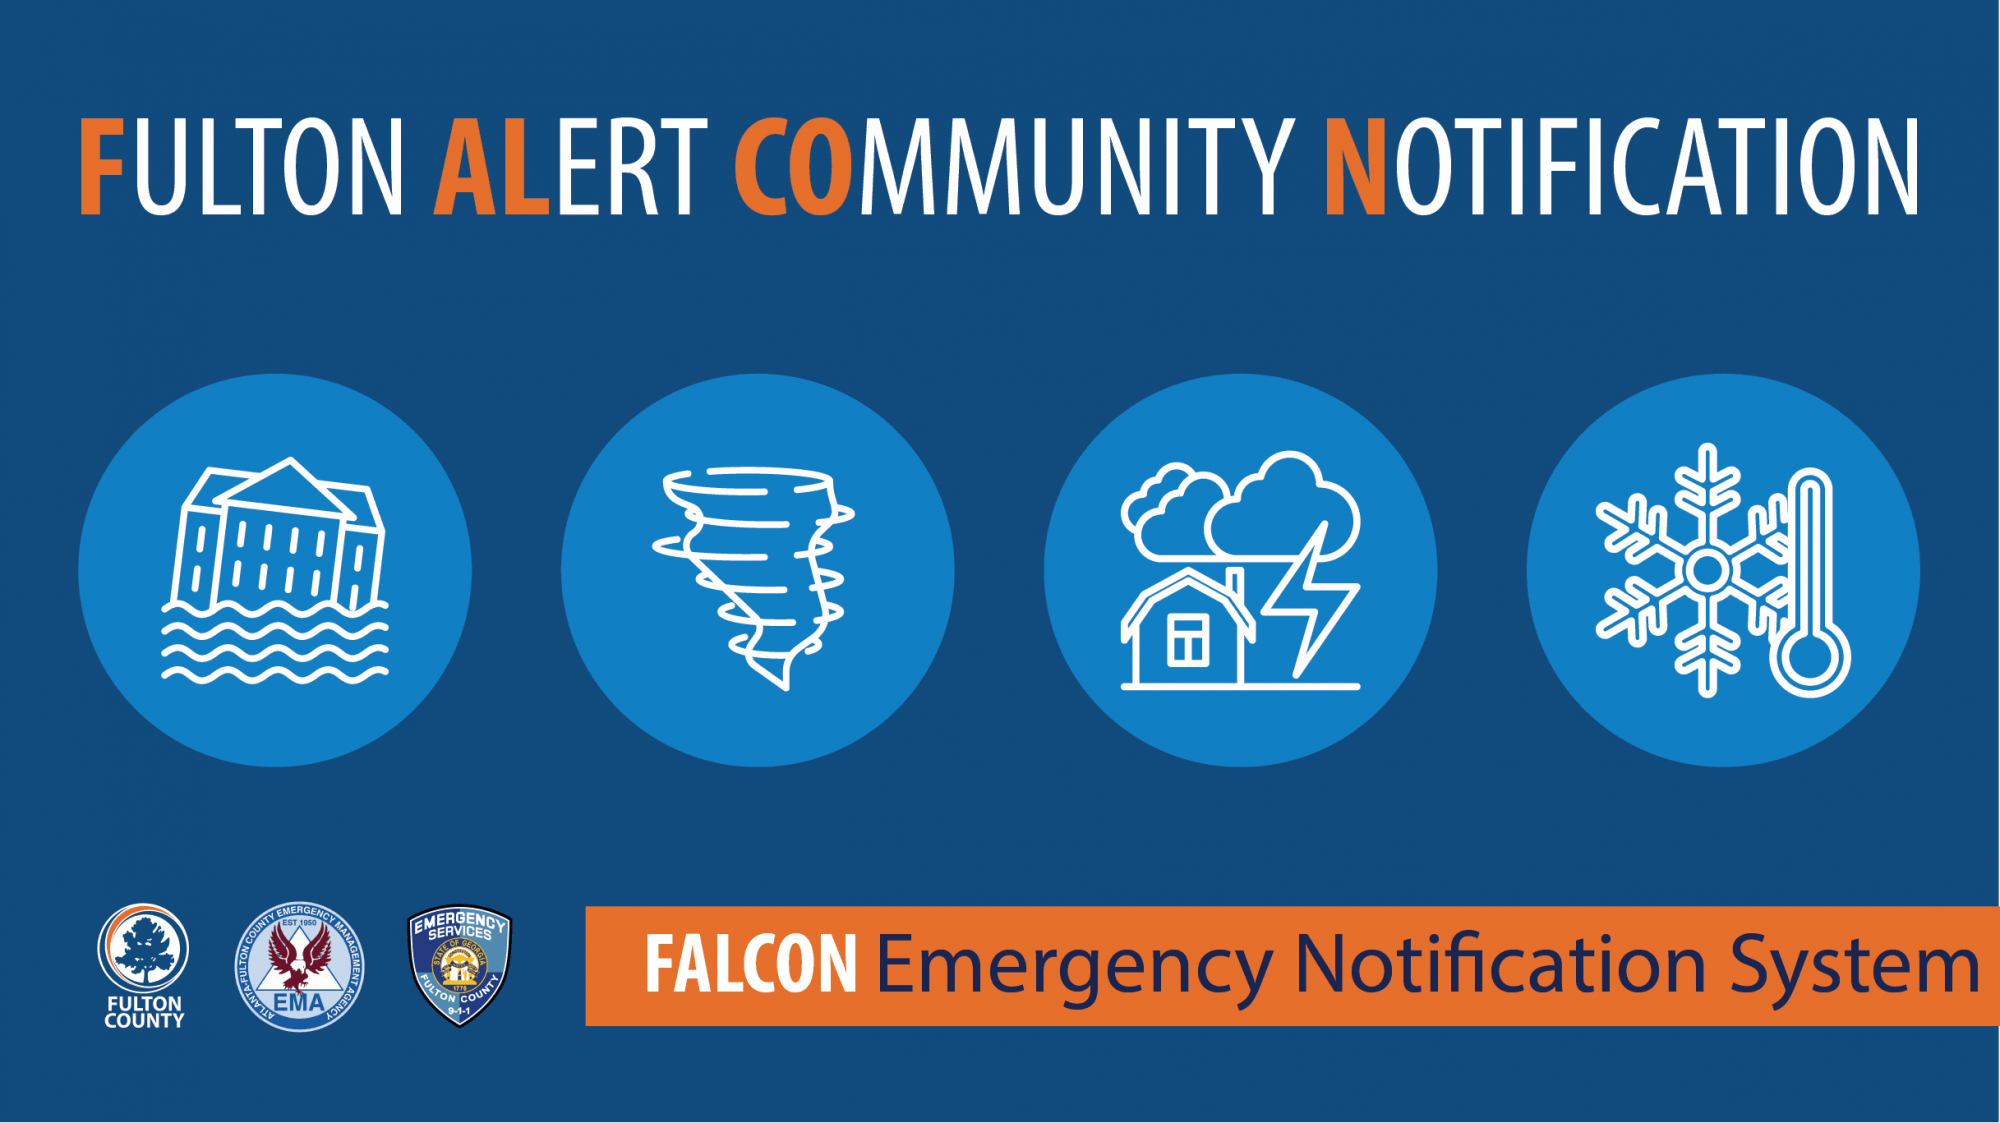 Fulton Alert Communication Notification Opens in new window